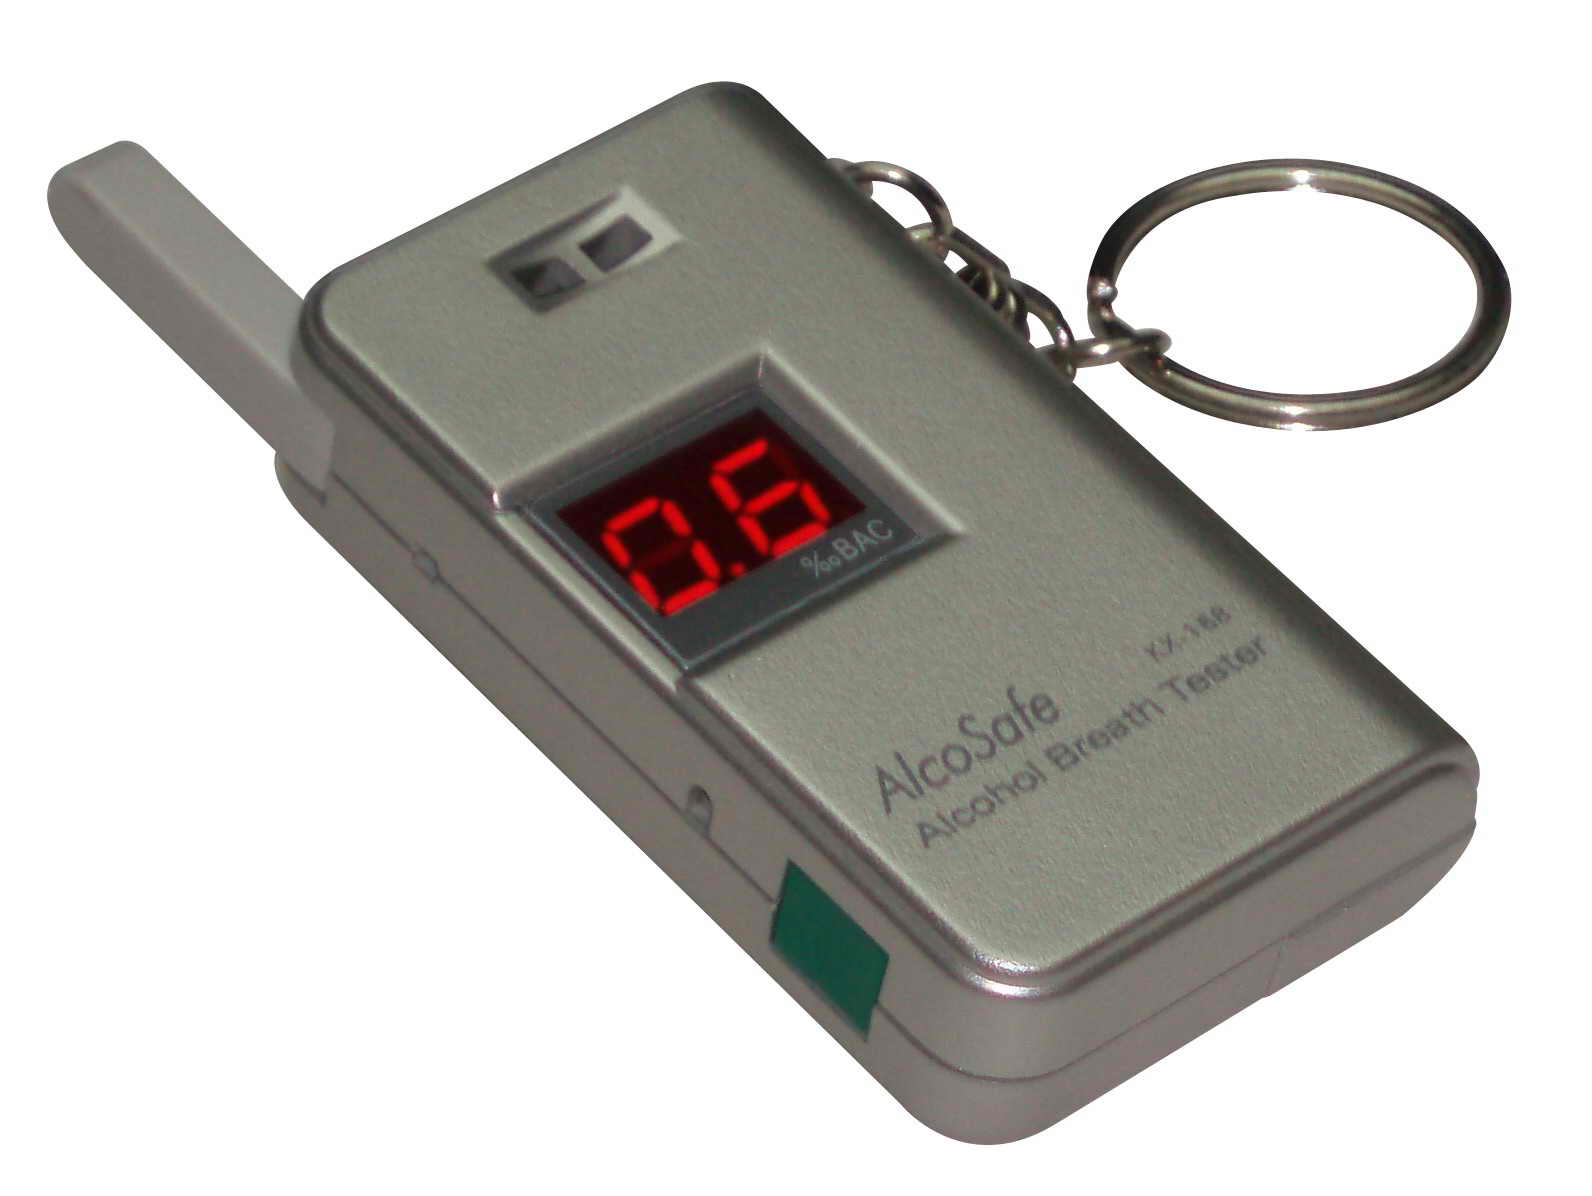  Smallest Key-Chain Digital Alcohol Breath Tester (La plus petite pièce-chaîne numérique ALCOTEST)